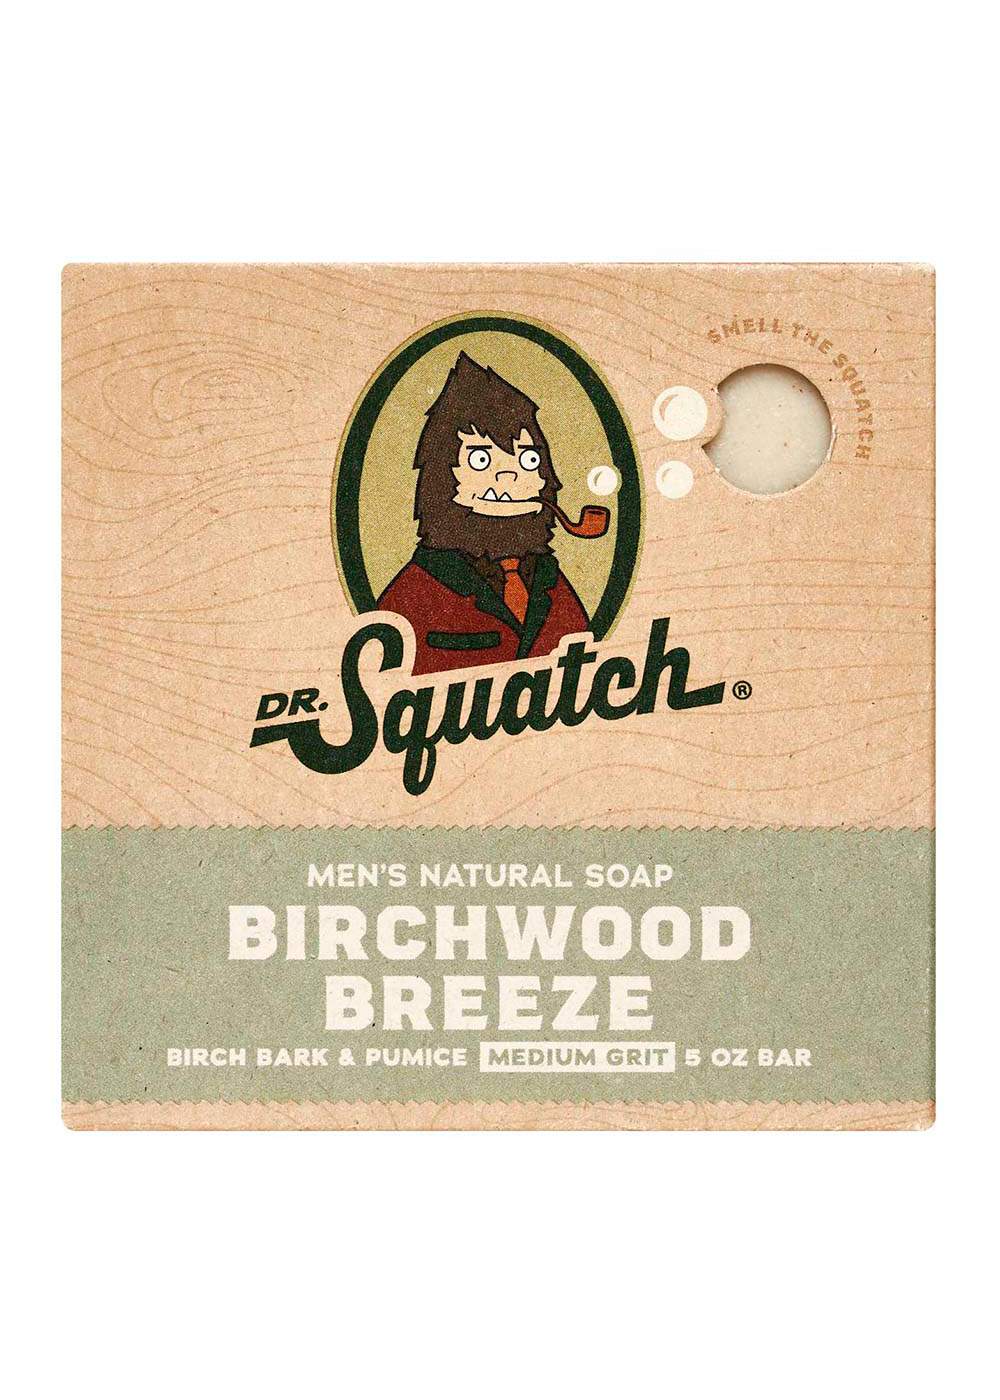 Dr. Squatch Men's Natural Soap Bar - Birchwood Breeze; image 1 of 6